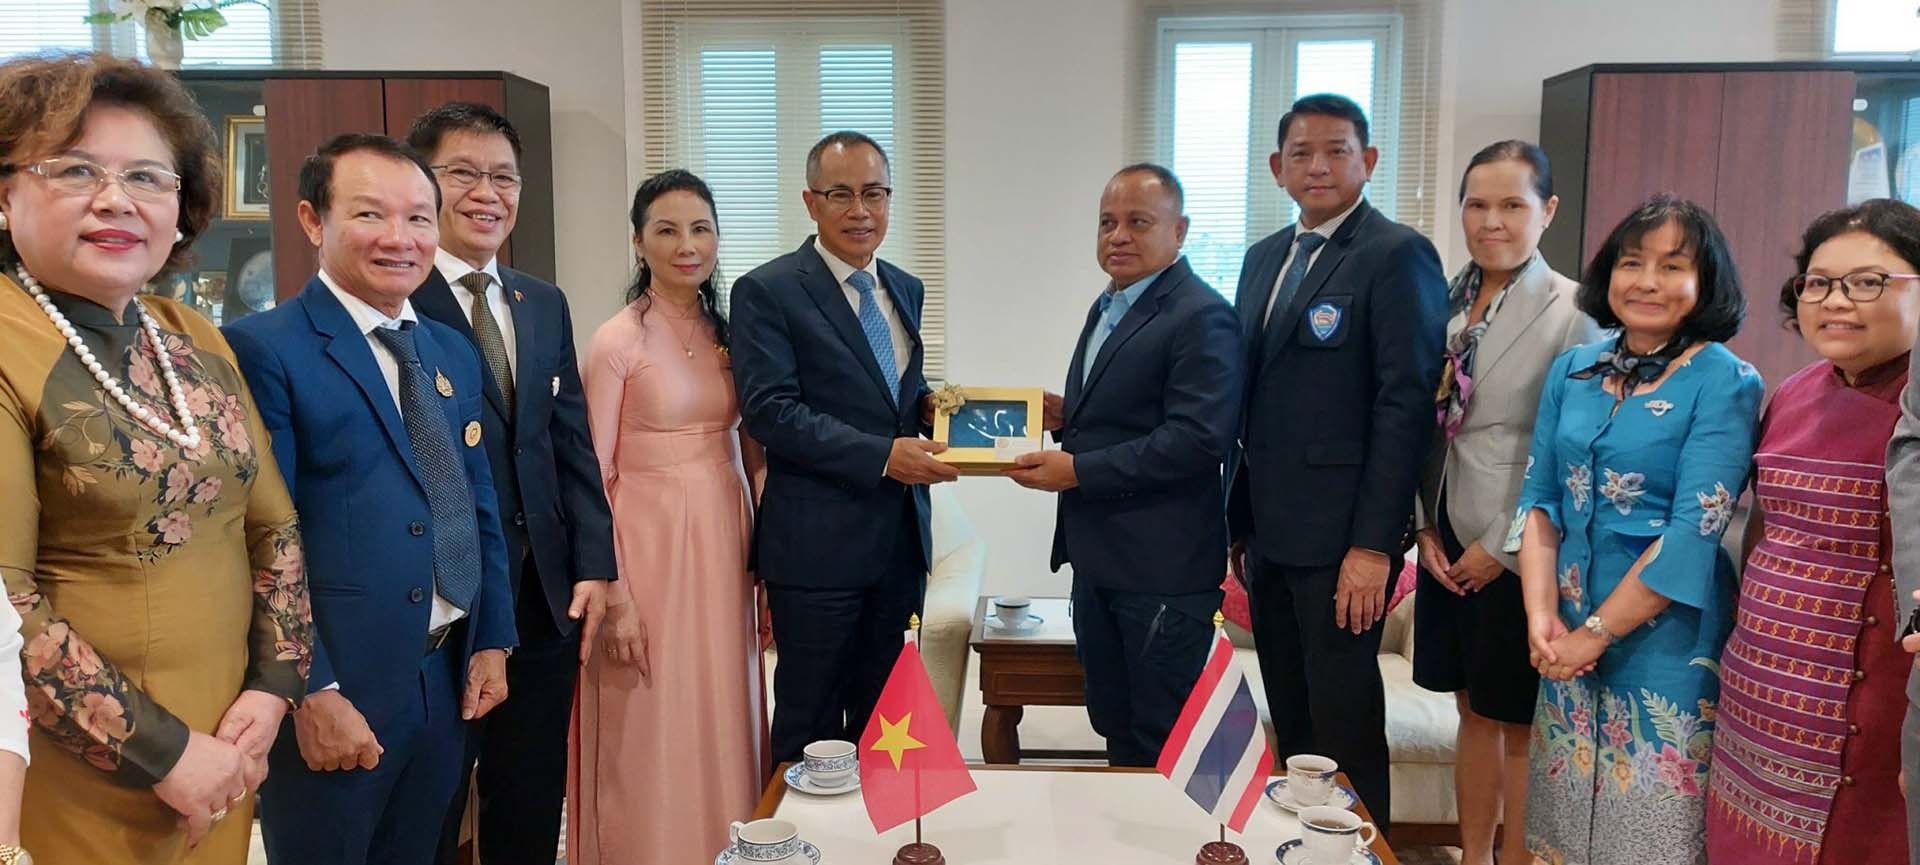 Tỉnh trưởng tỉnh Phuket Narong Wun Siew tặng quà lưu niệm Đại sứ Phan Chí Thành.